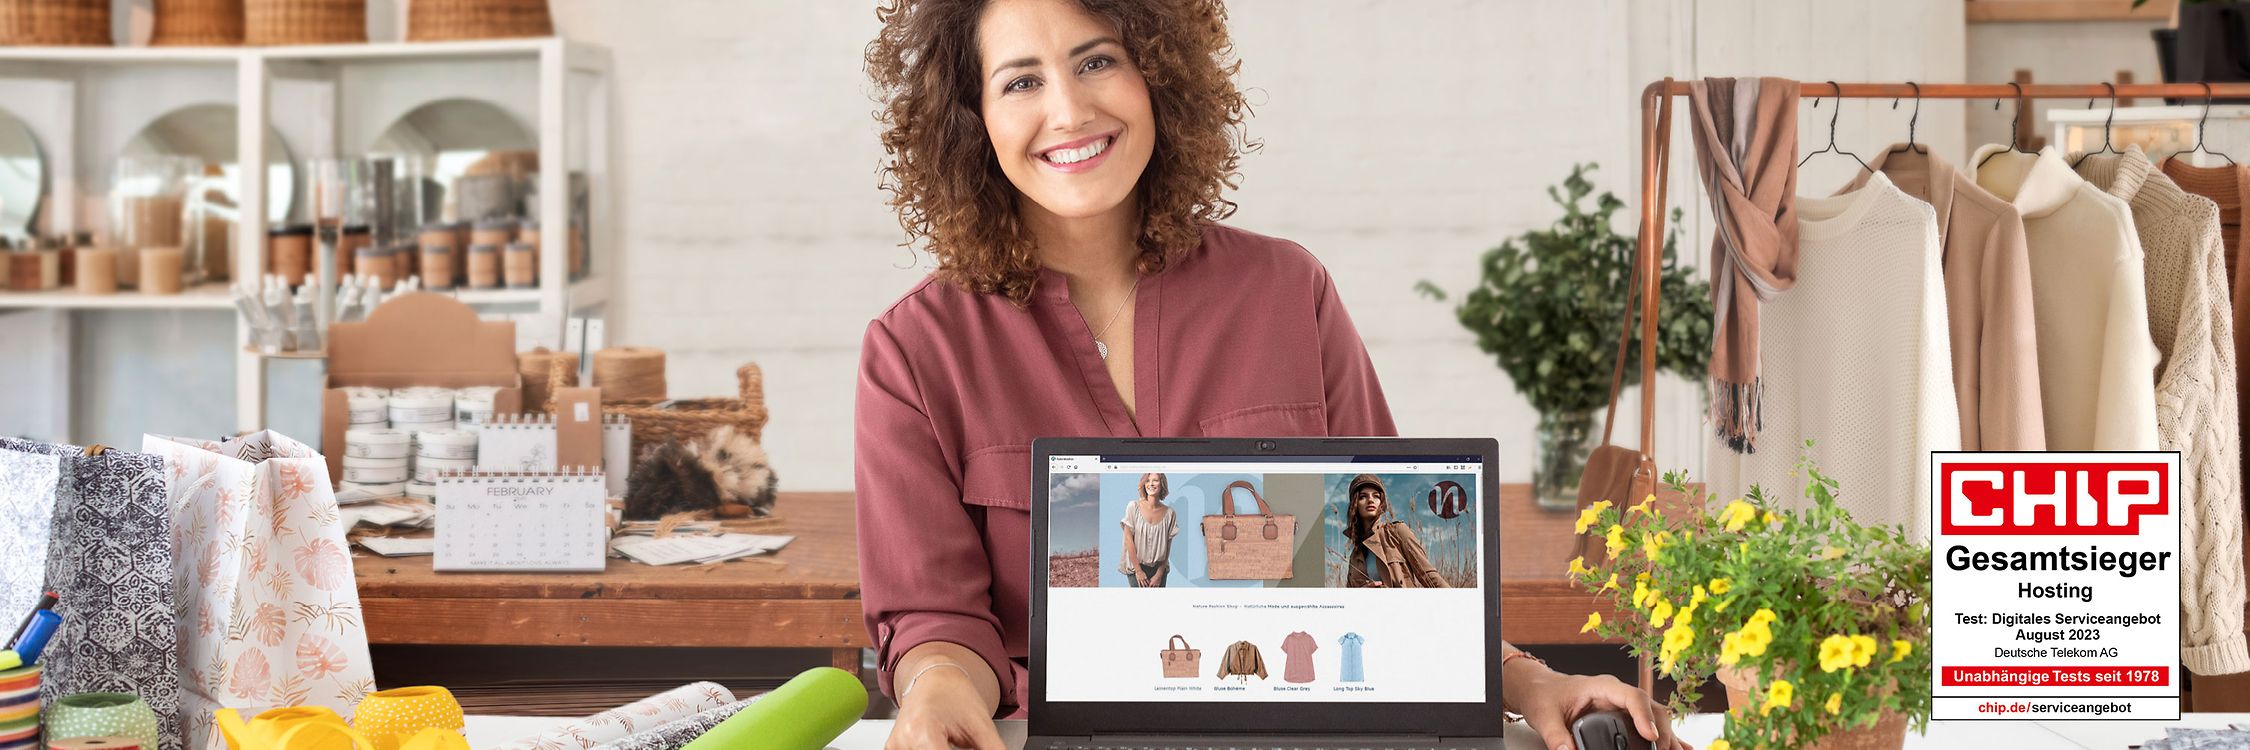 Fröhliche Geschäftsfrau präsentiert in ihrem Laden auf einem Laptop ihren neuen mit der Telekom erstellten Webshop.